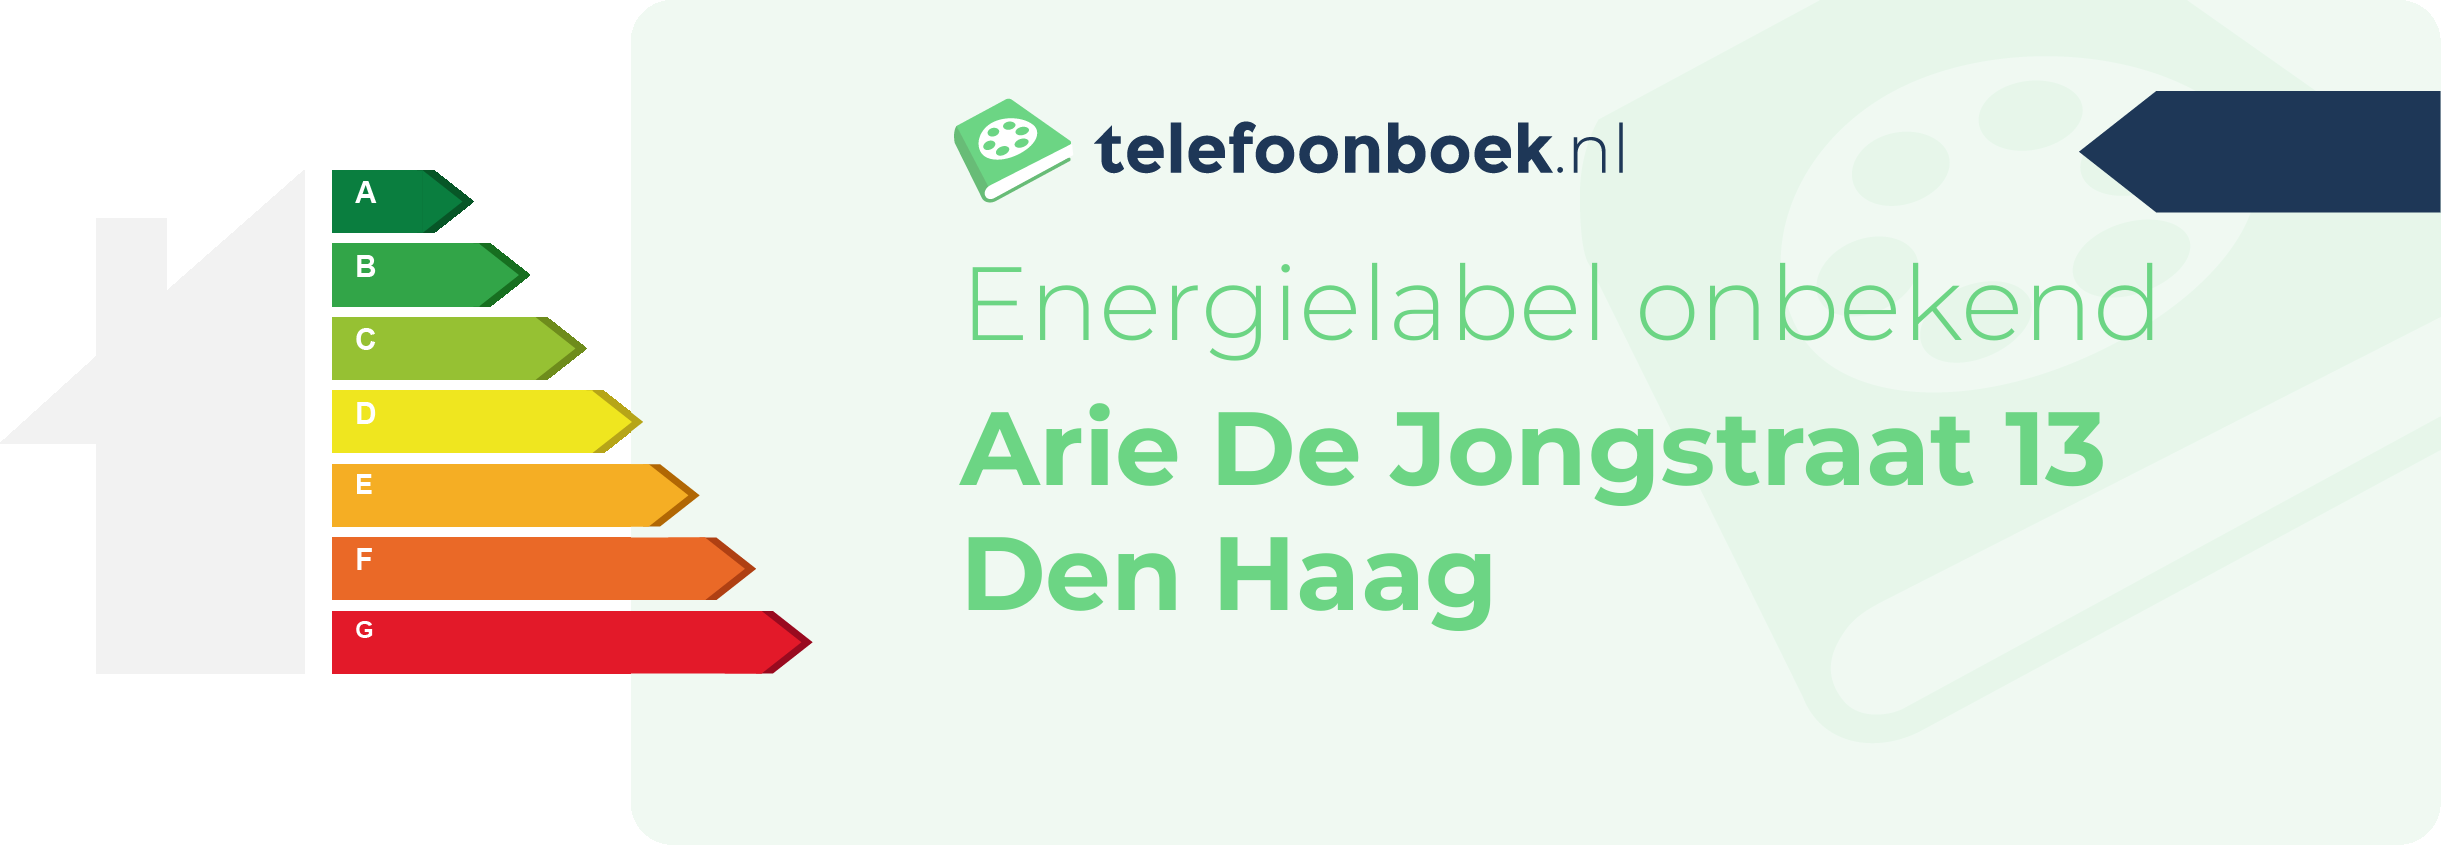 Energielabel Arie De Jongstraat 13 Den Haag